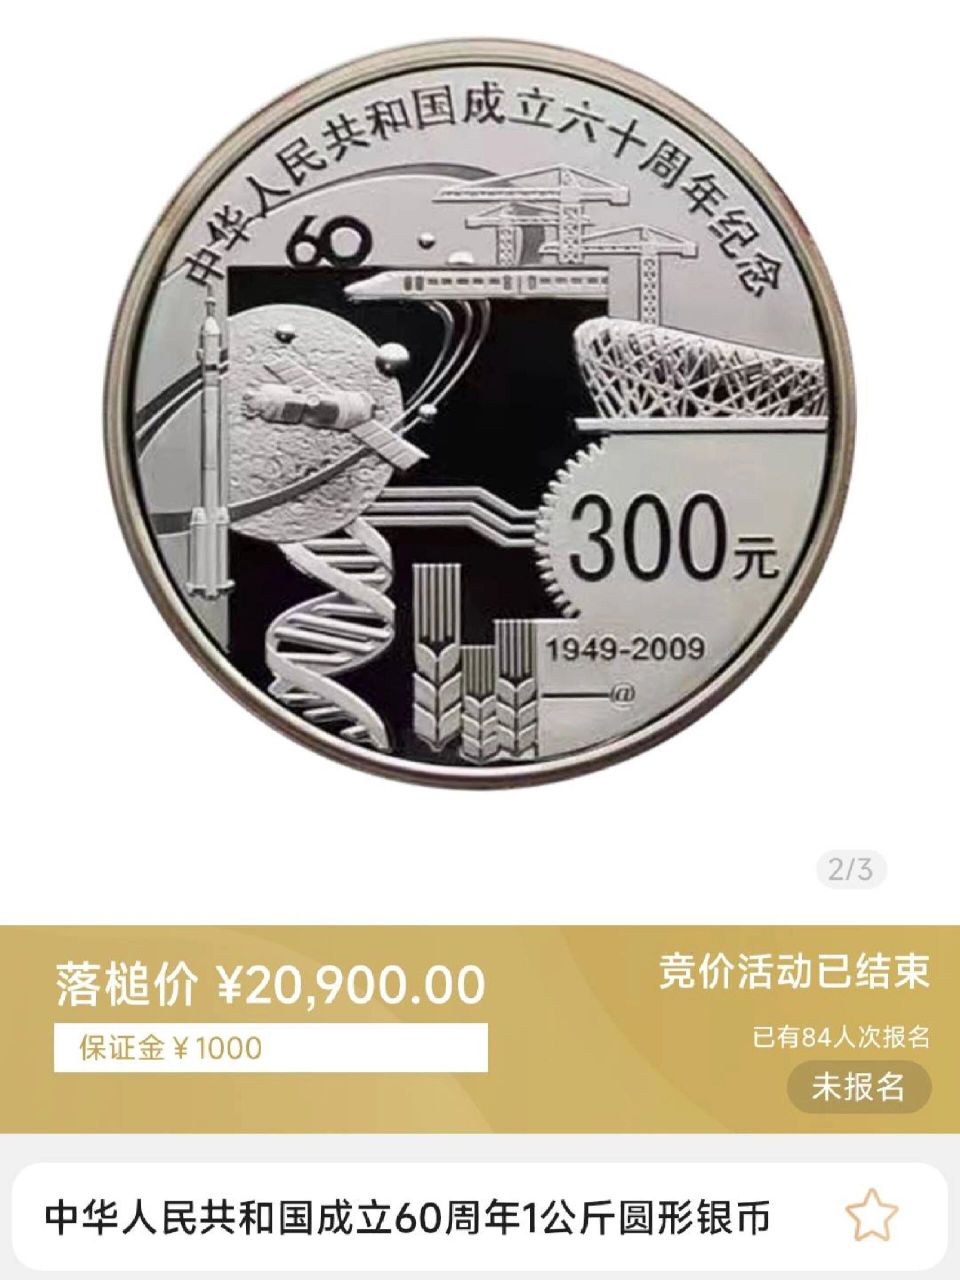 建国60周年纪念币,20900一枚,519成交  1000克圆形银币,拍卖出价57次